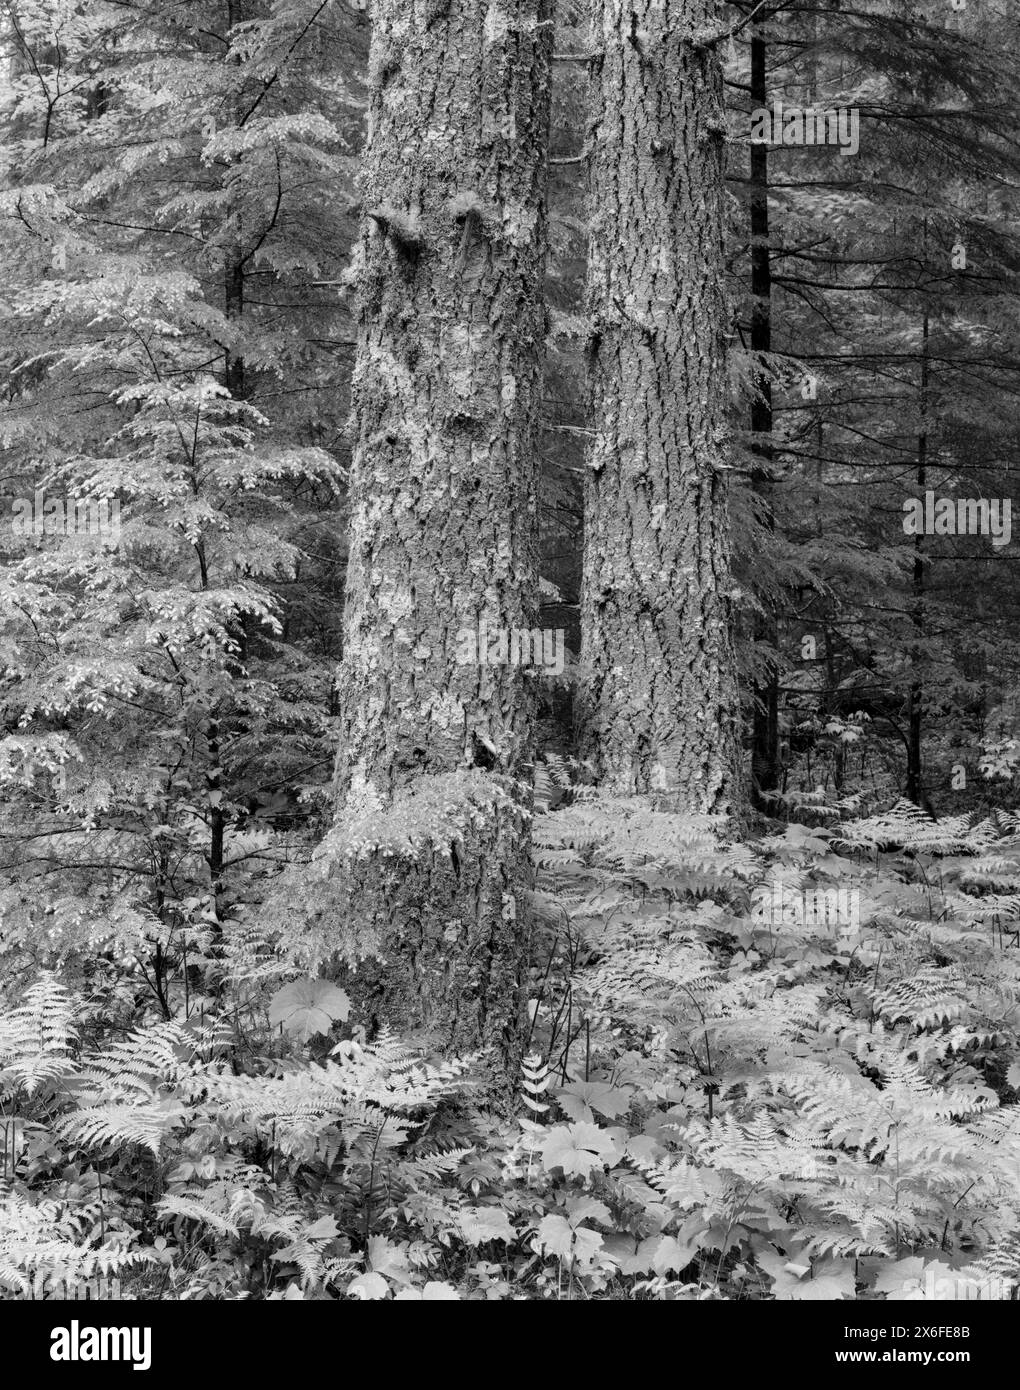 BW01821-00....WASHINGTON - forêt mixte dans la vallée de la rivière Lewis, forêt nationale Gifford Pinchot. Ilford Delta 100 avec K.B. Canham 4x5. Exposition 4 M. Banque D'Images